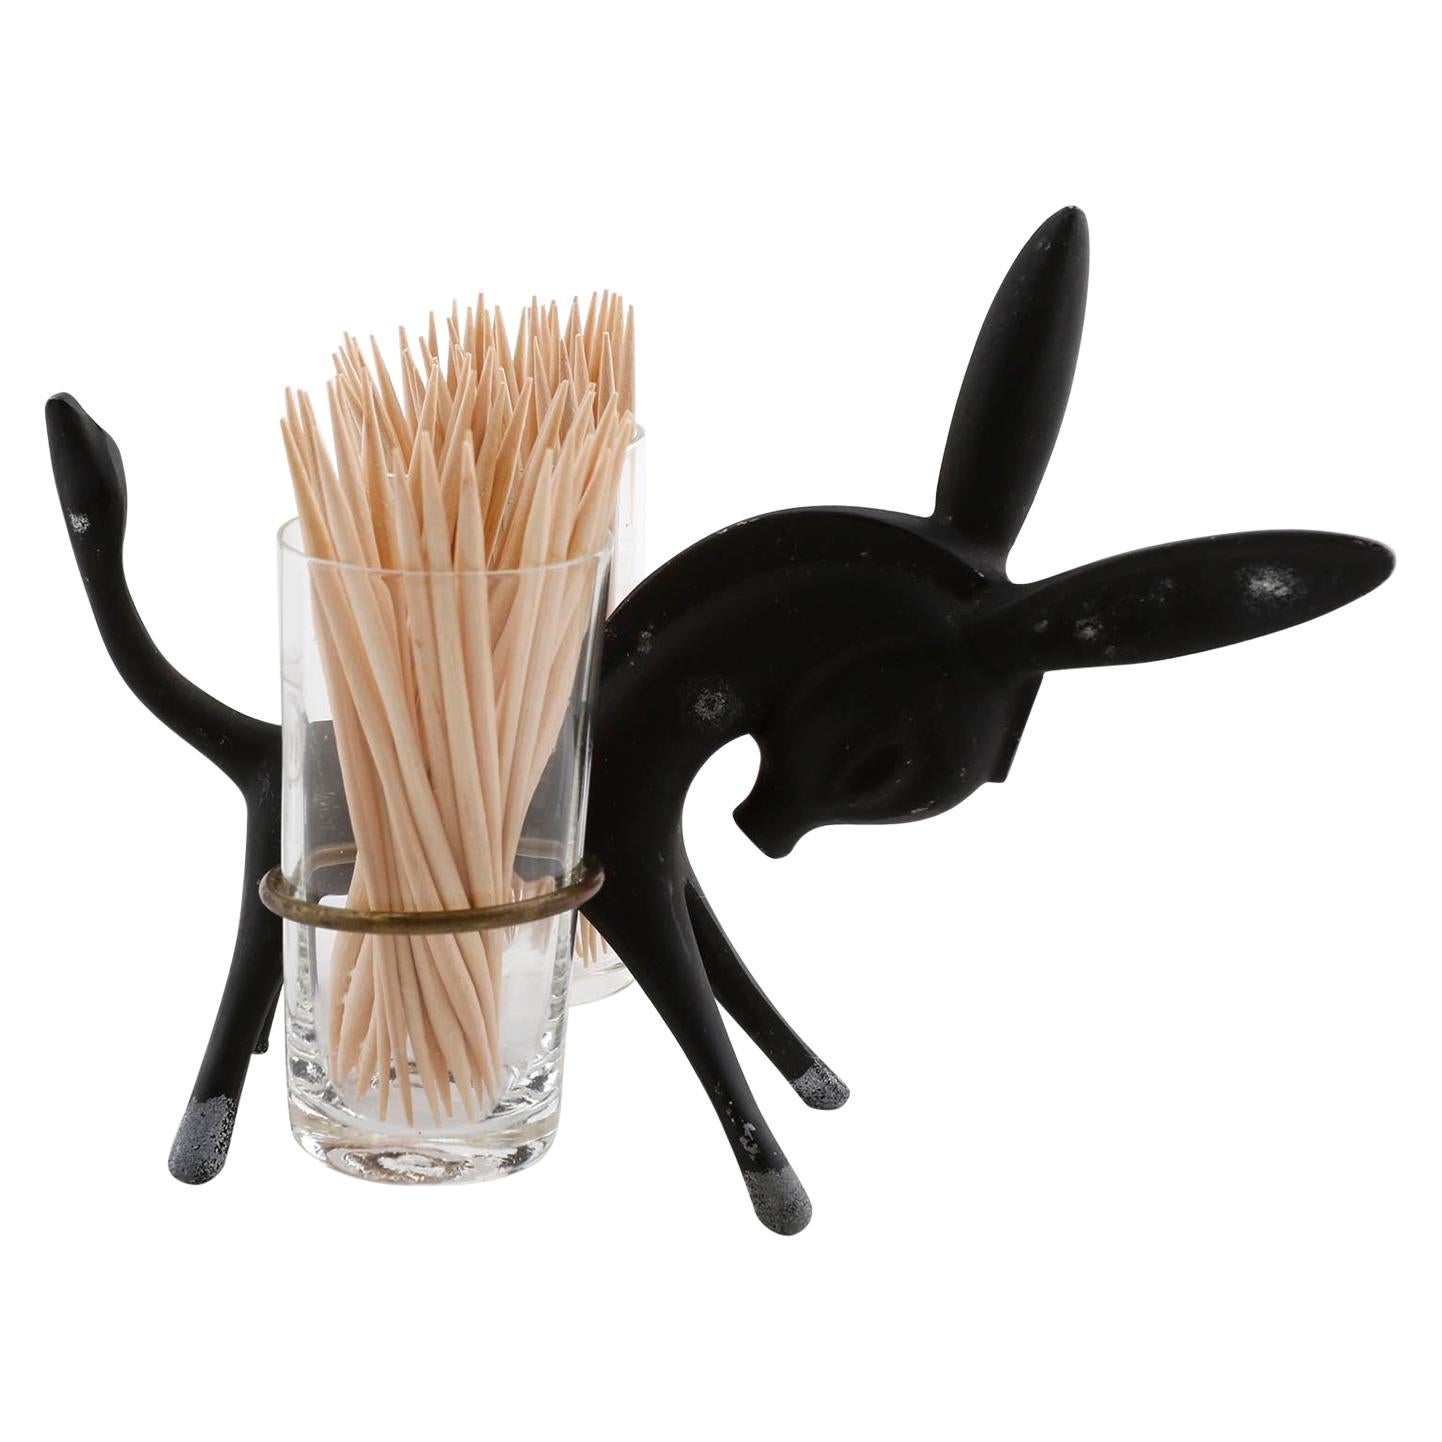 Walter Bosse Toothpick Holder Donkey Set, Black Brass Glass, Hertha Baller, 1950